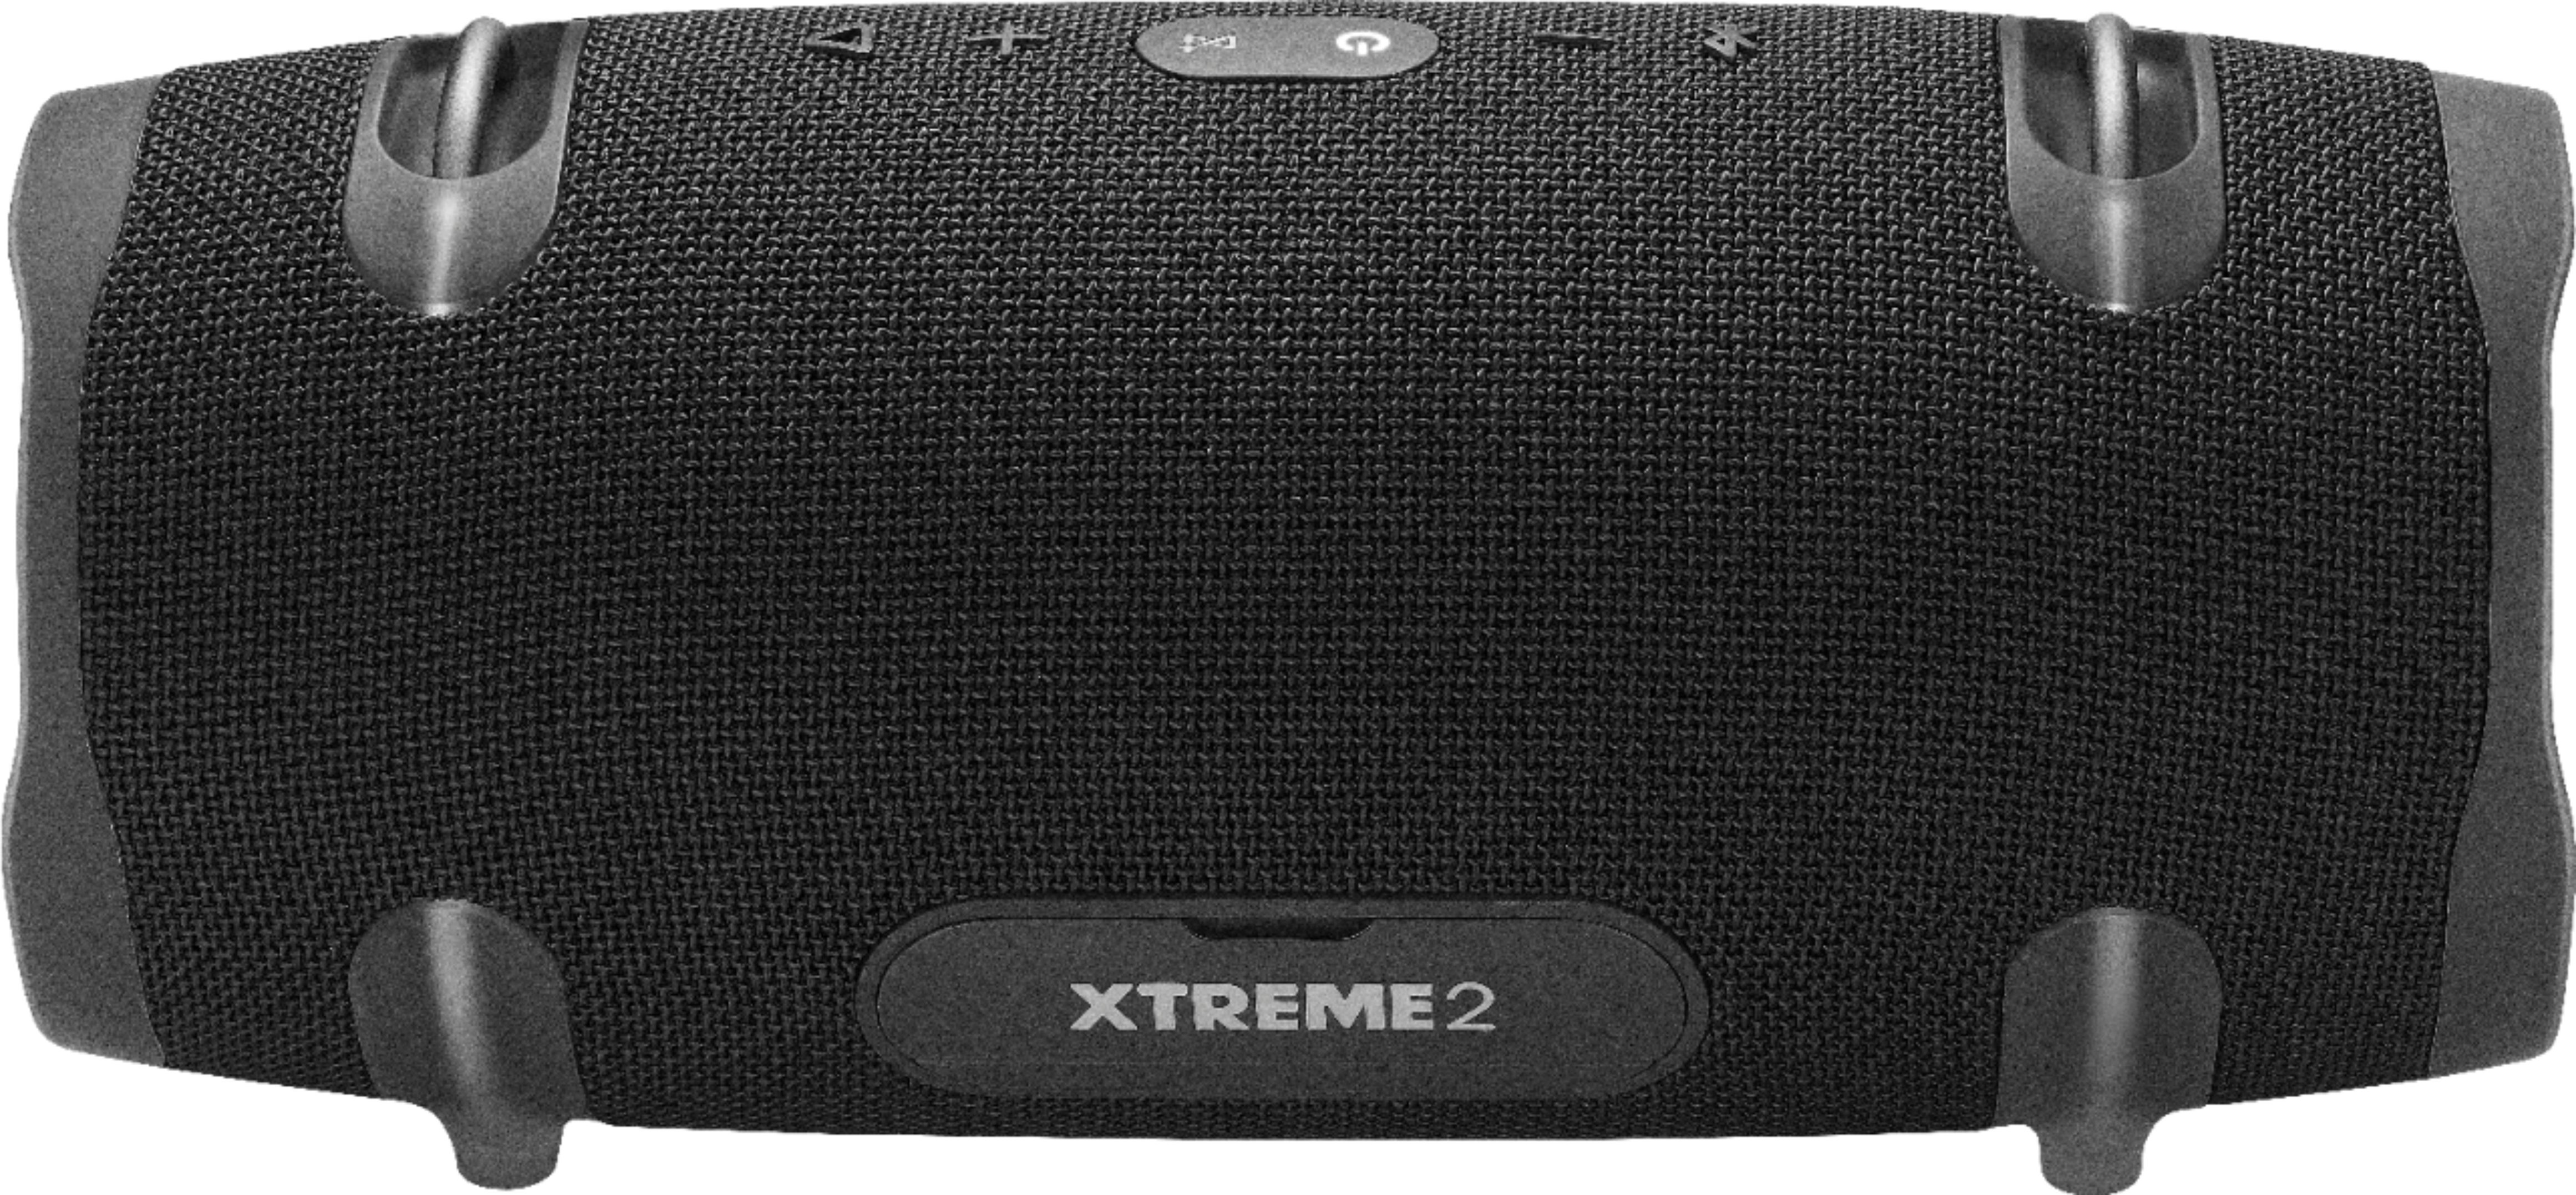 JBL Xtreme 2 Green Waterproof Bluetooth Speaker - Open Box 